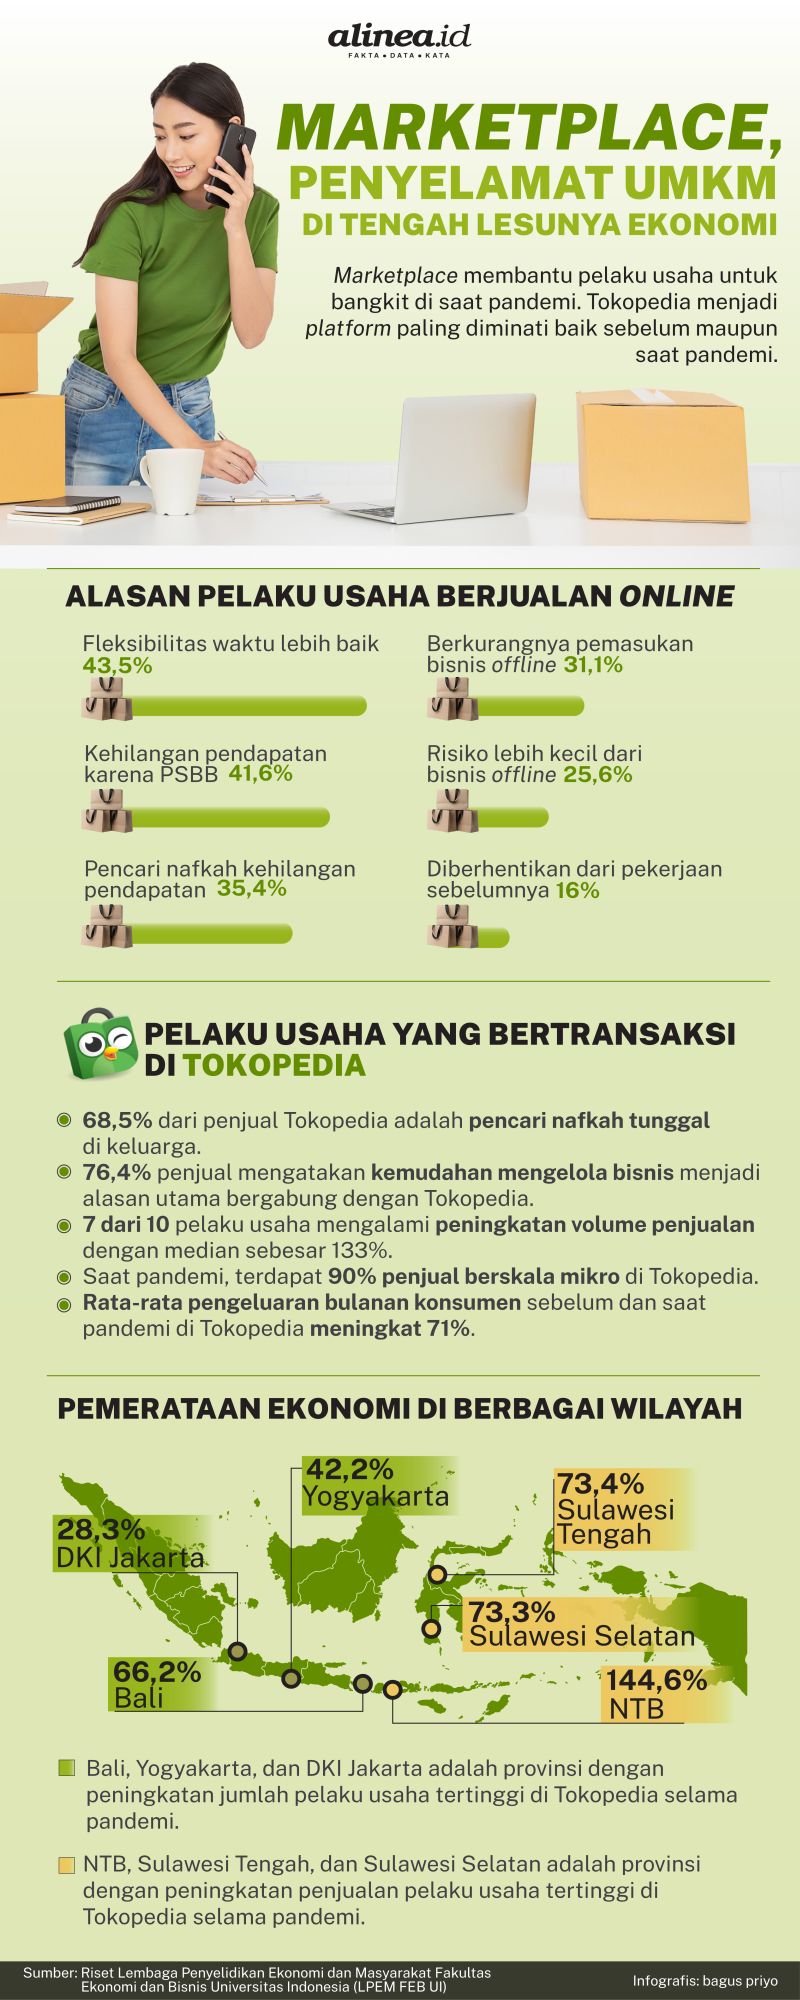 Infografik marketplace penyelamat UMKM. Alinea.id/Bagus Priyo. 